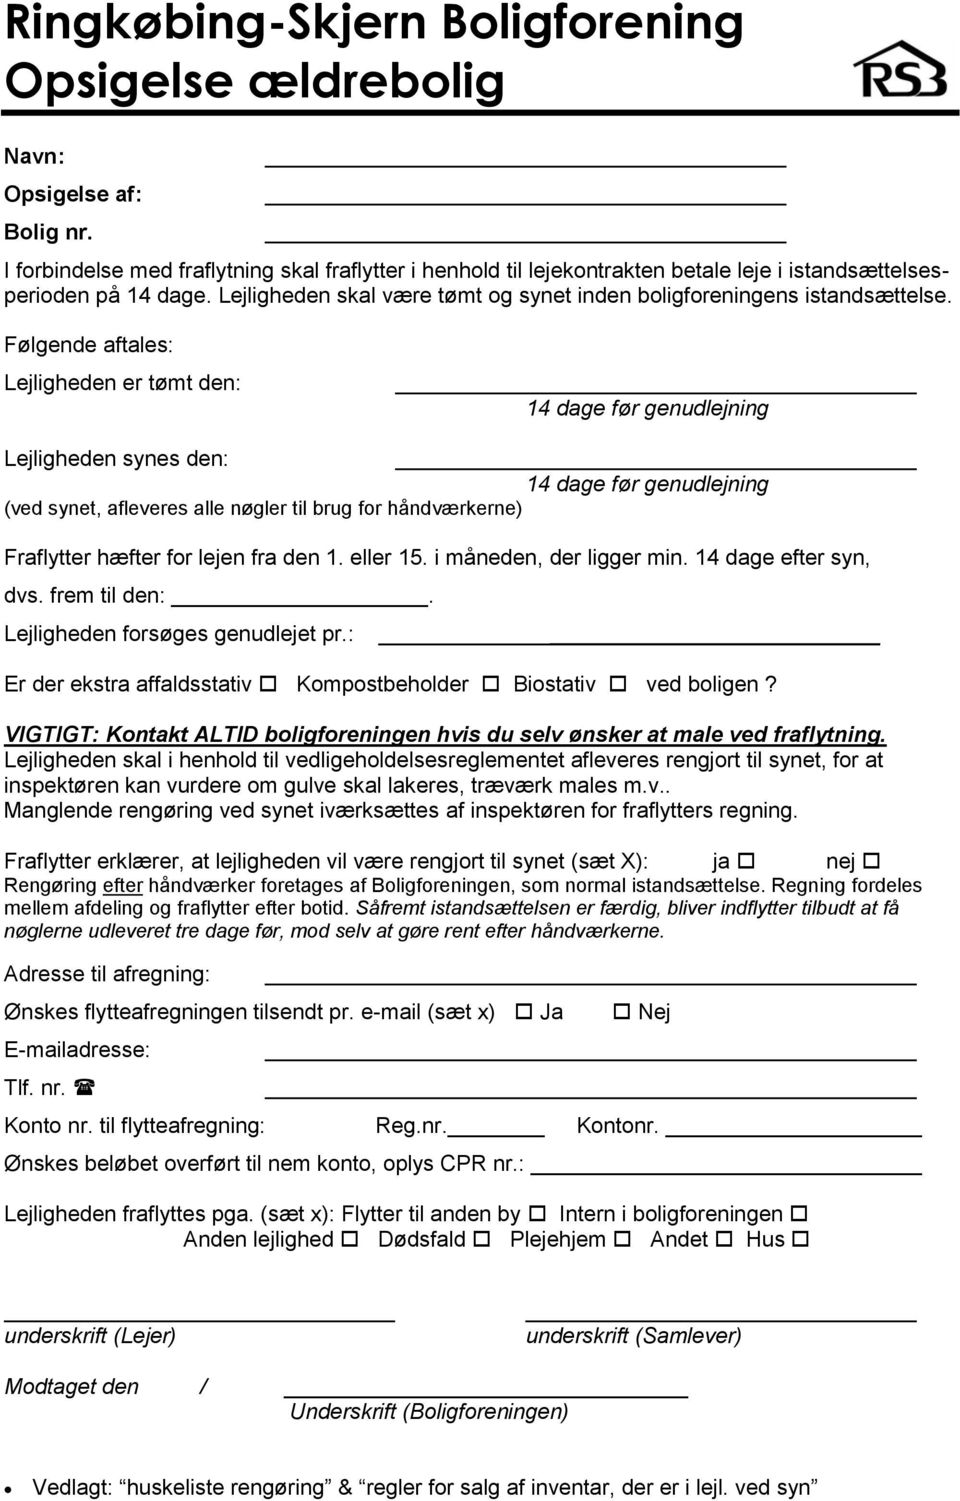 Ringkøbing-Skjern Boligforening Opsigelse ældrebolig - PDF Gratis download